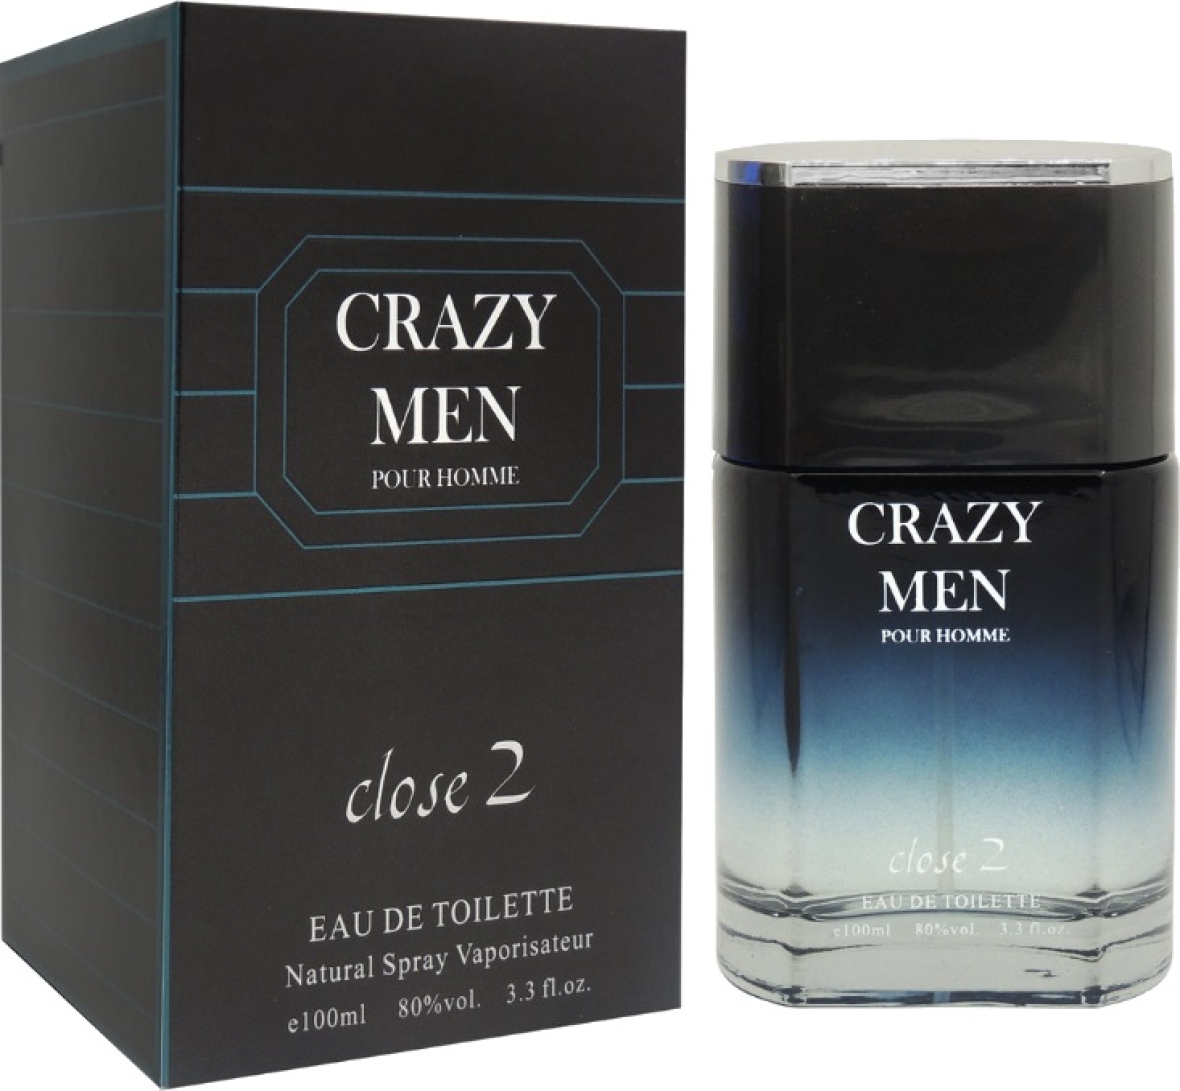 Notre gamme de parfums H.7 CRAZY MEN Financer voyage scolaire